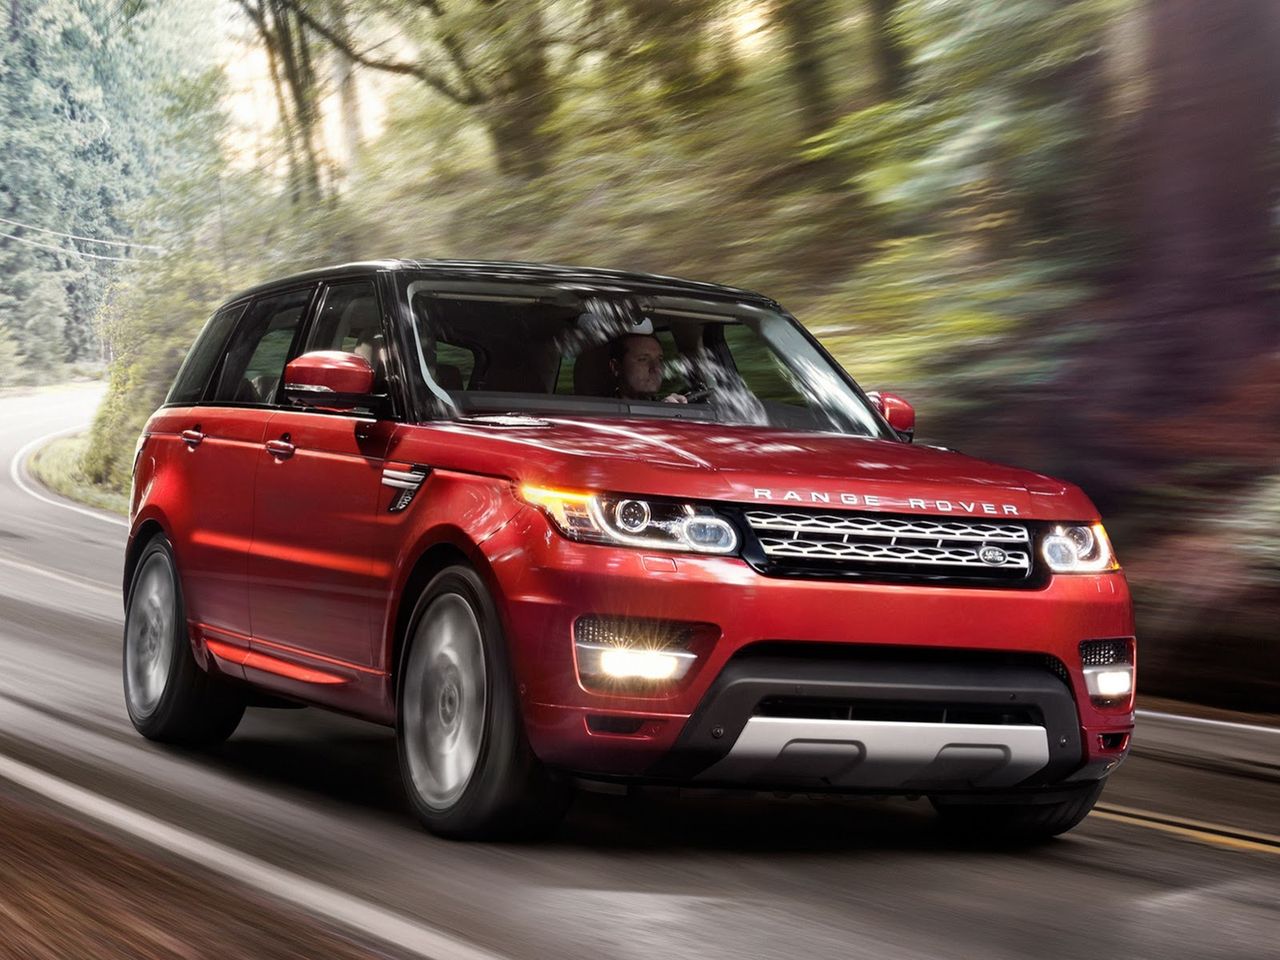 2014 Range Rover Sport (oficjalne zdjęcia)